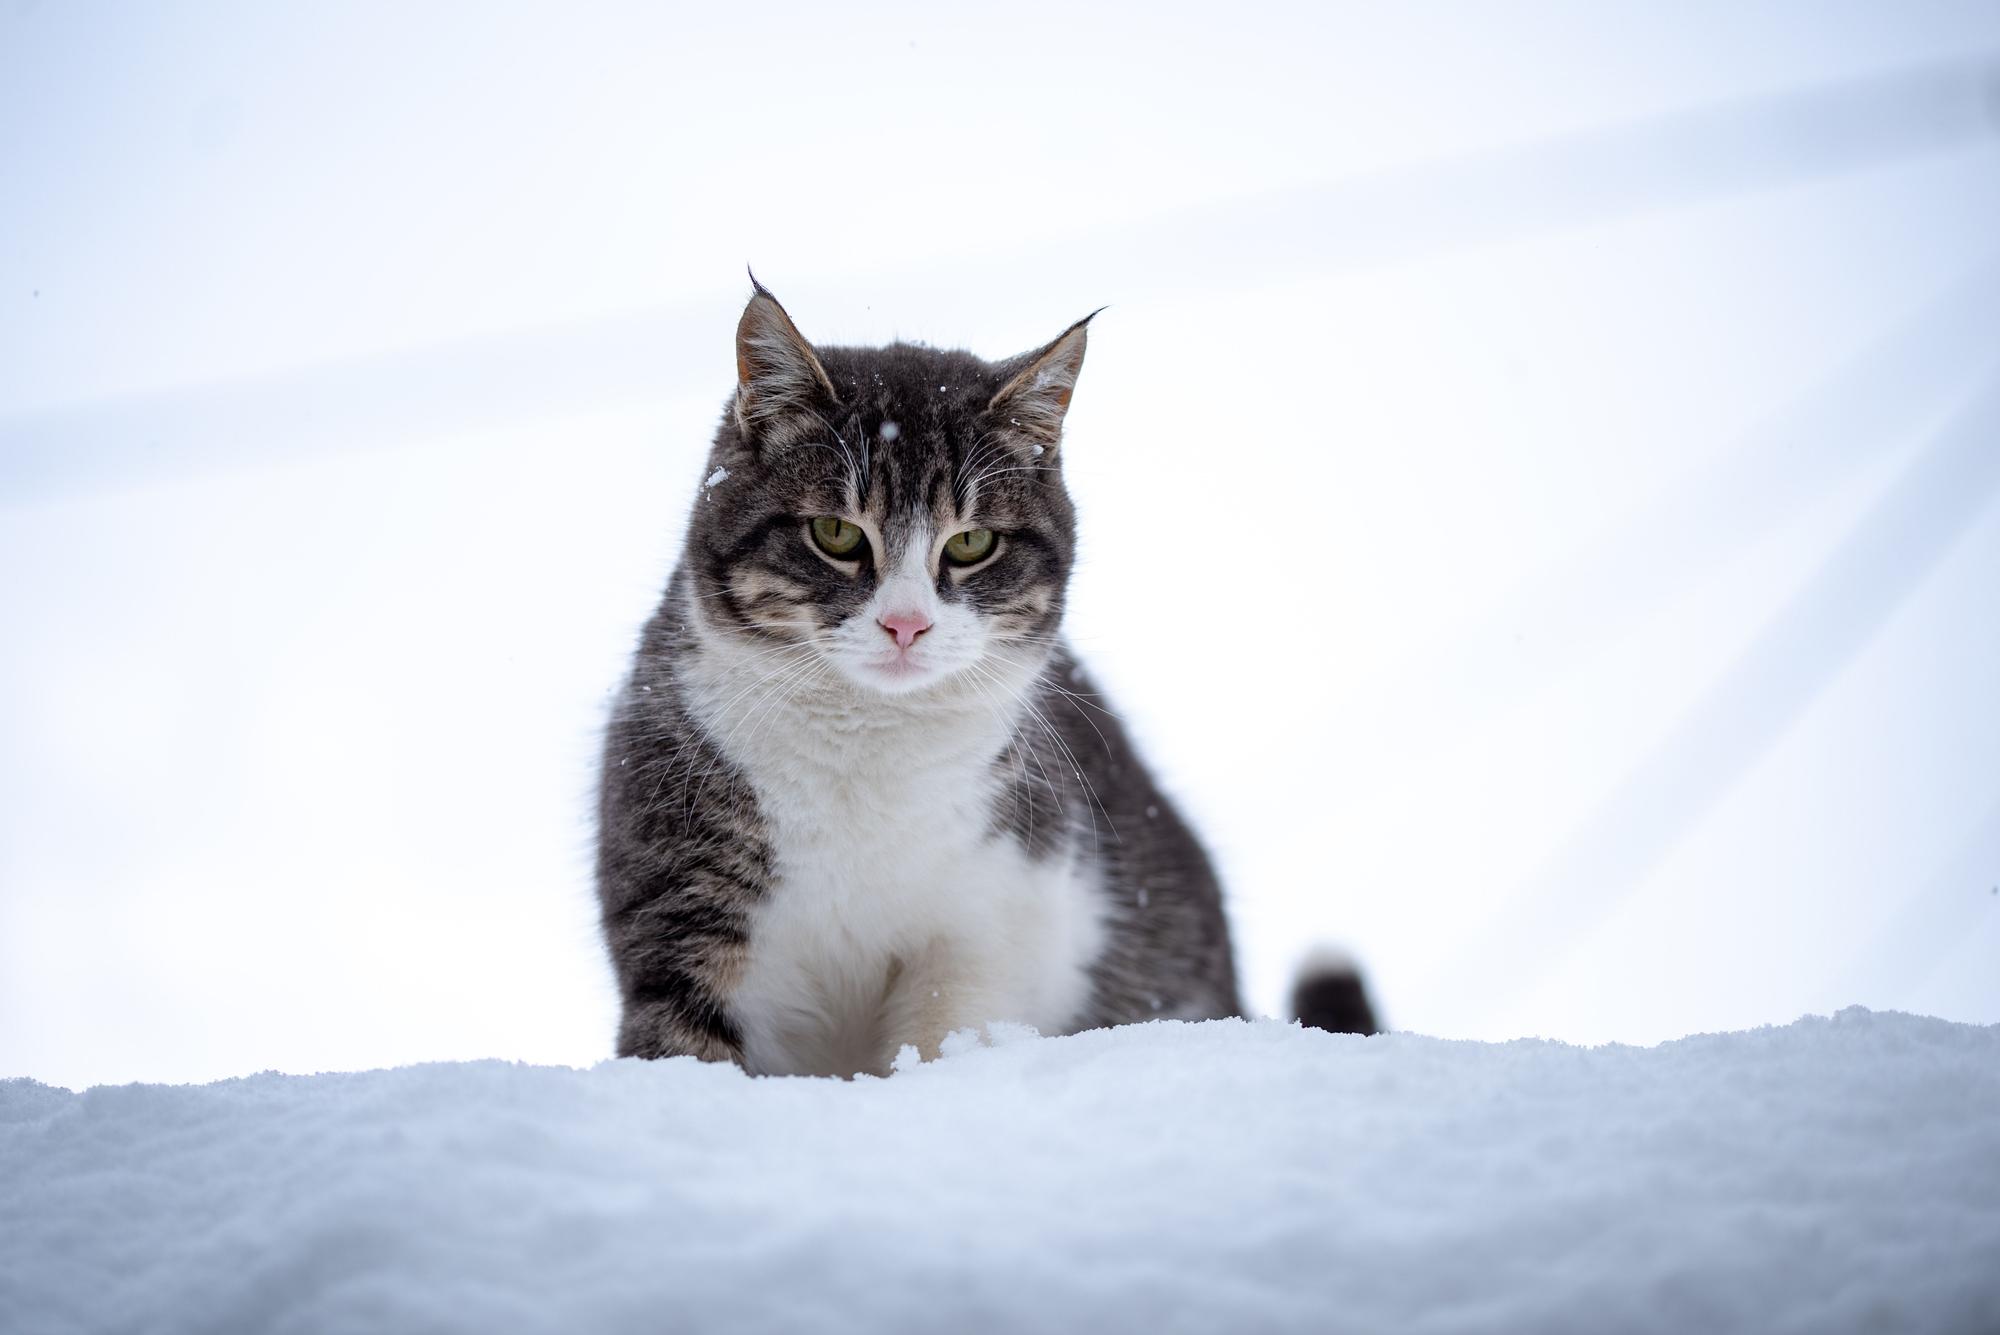 Desvelamos el misterio: ¿los gatos pueden sentir frío y cómo lo